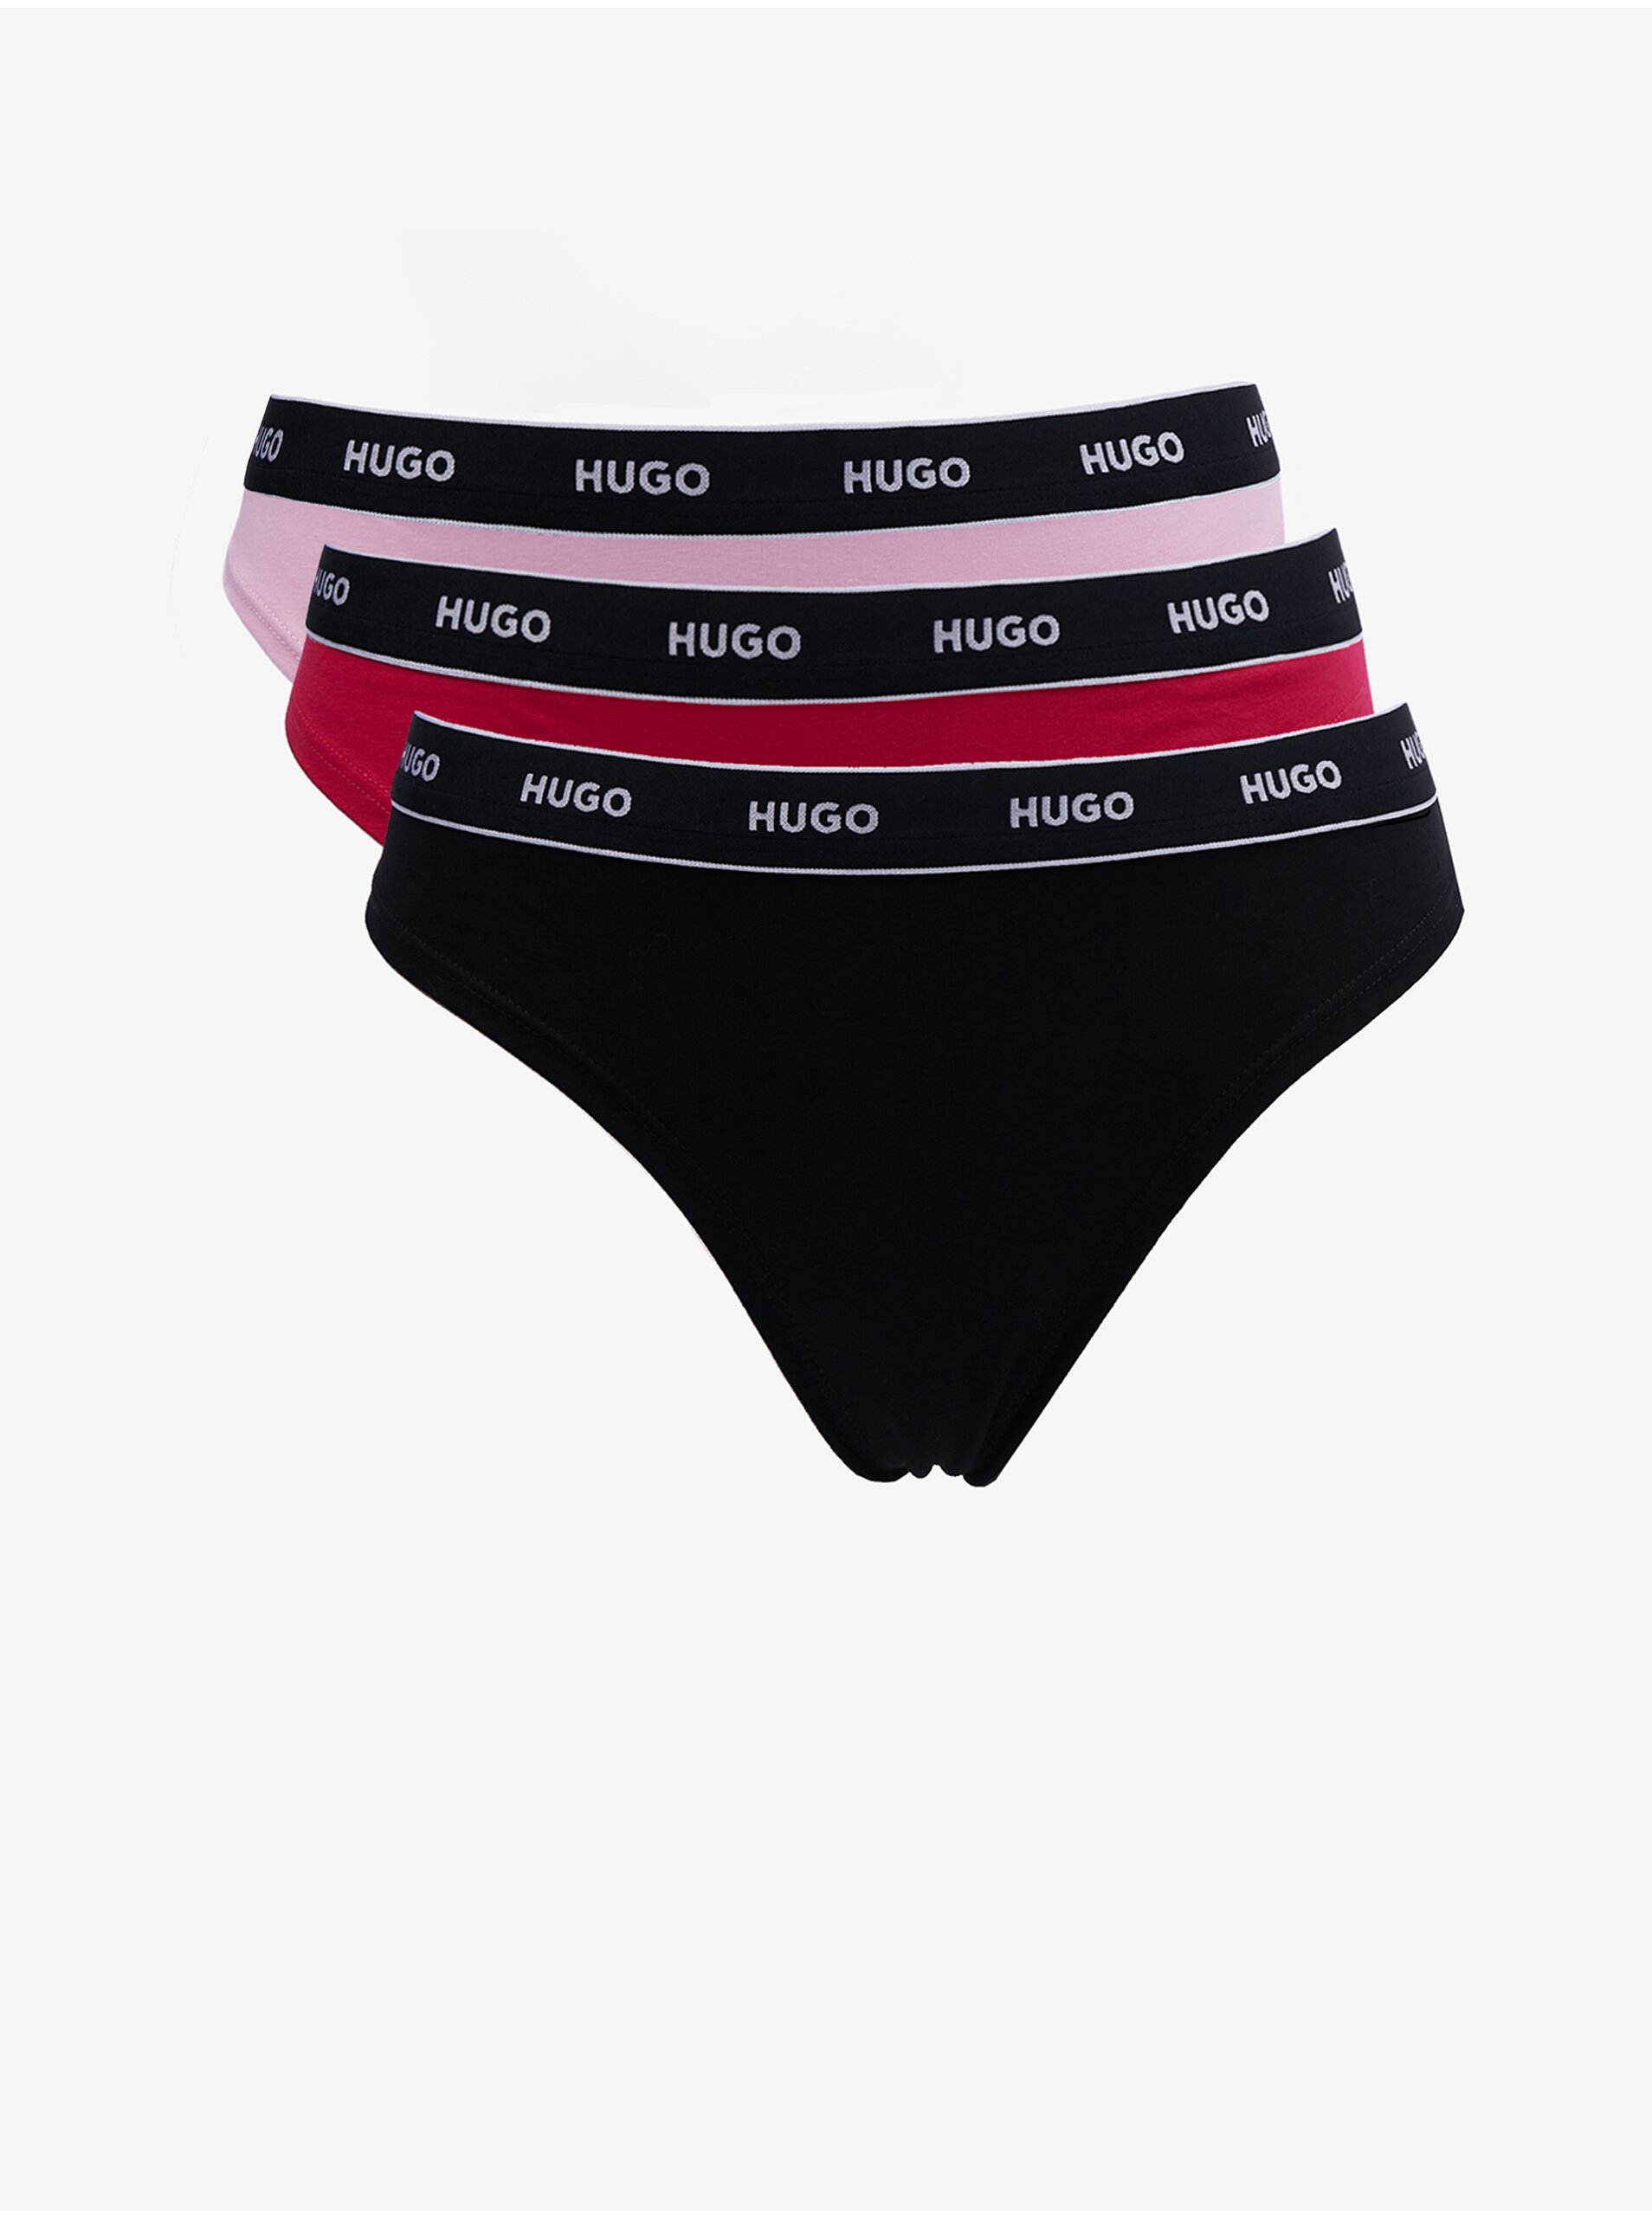 Lacno Súprava troch dámskych táng v čiernej, červenej a ružovej farbe HUGO